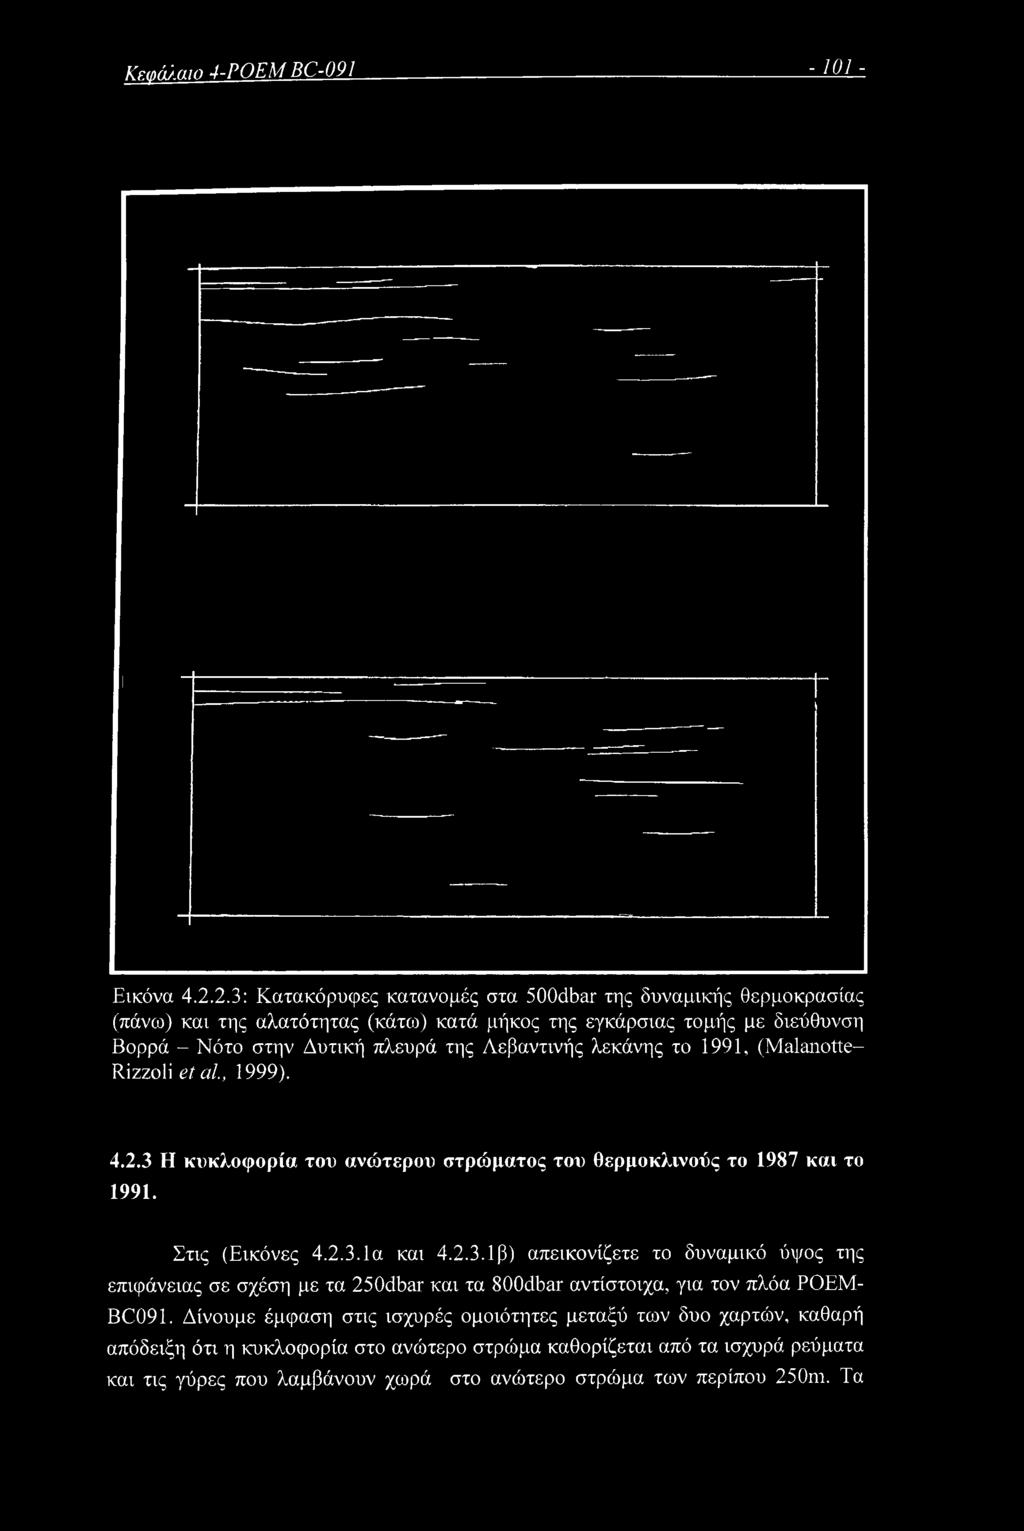 Λεβαντινής λεκάνης το 1991, (Malanotte- Rizzoli et al, 1999). 4.2,3 